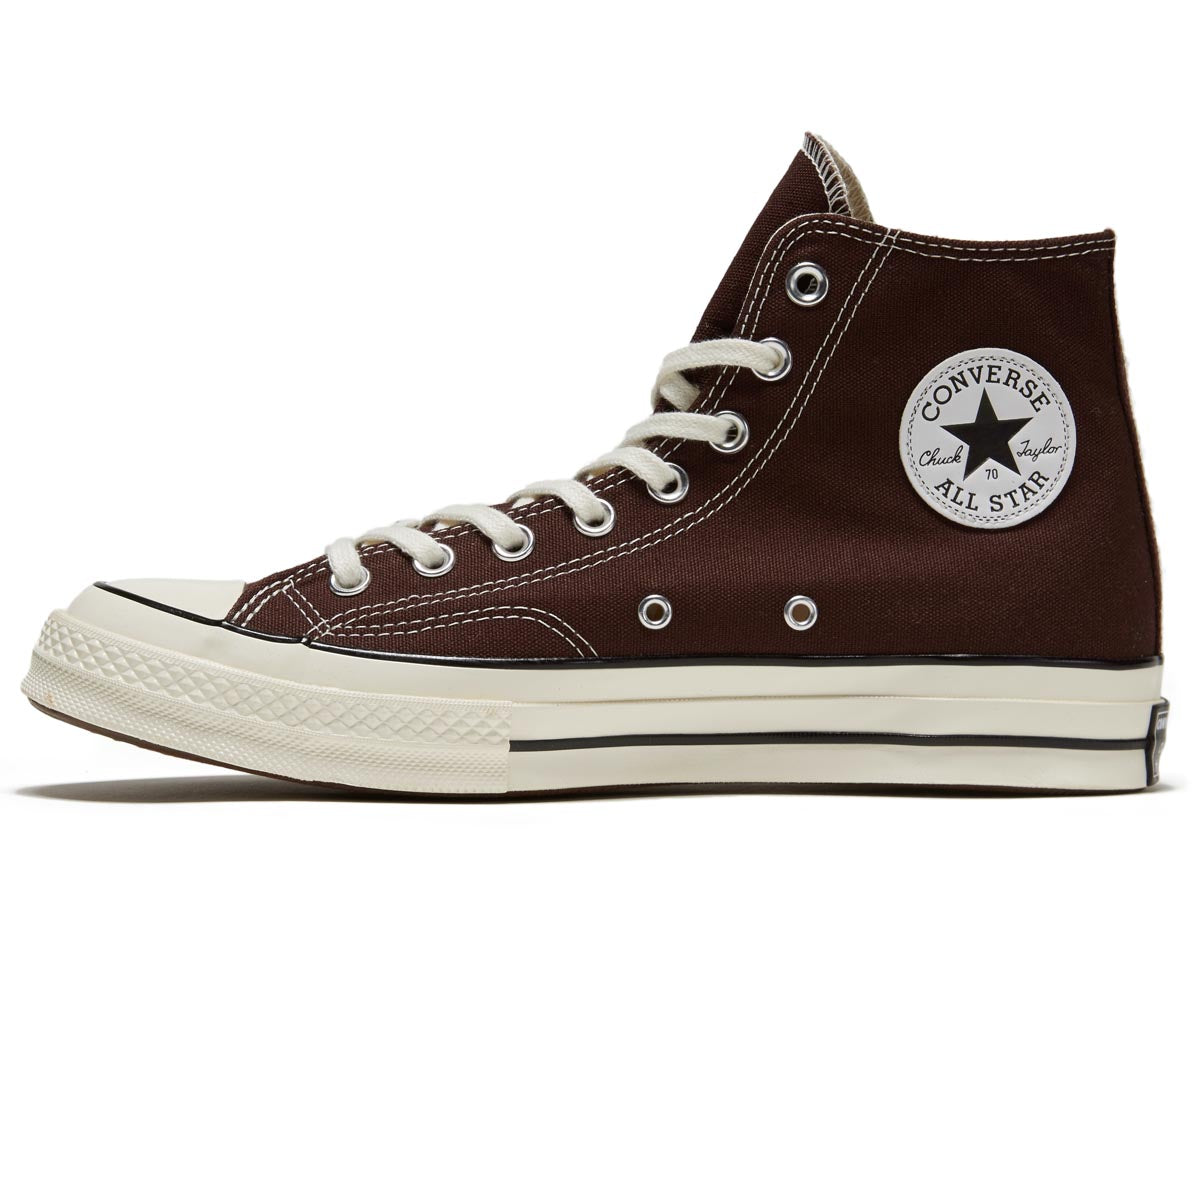 Converse Chuck 70 Hi Shoes - Dark Root/Egret/Black image 2